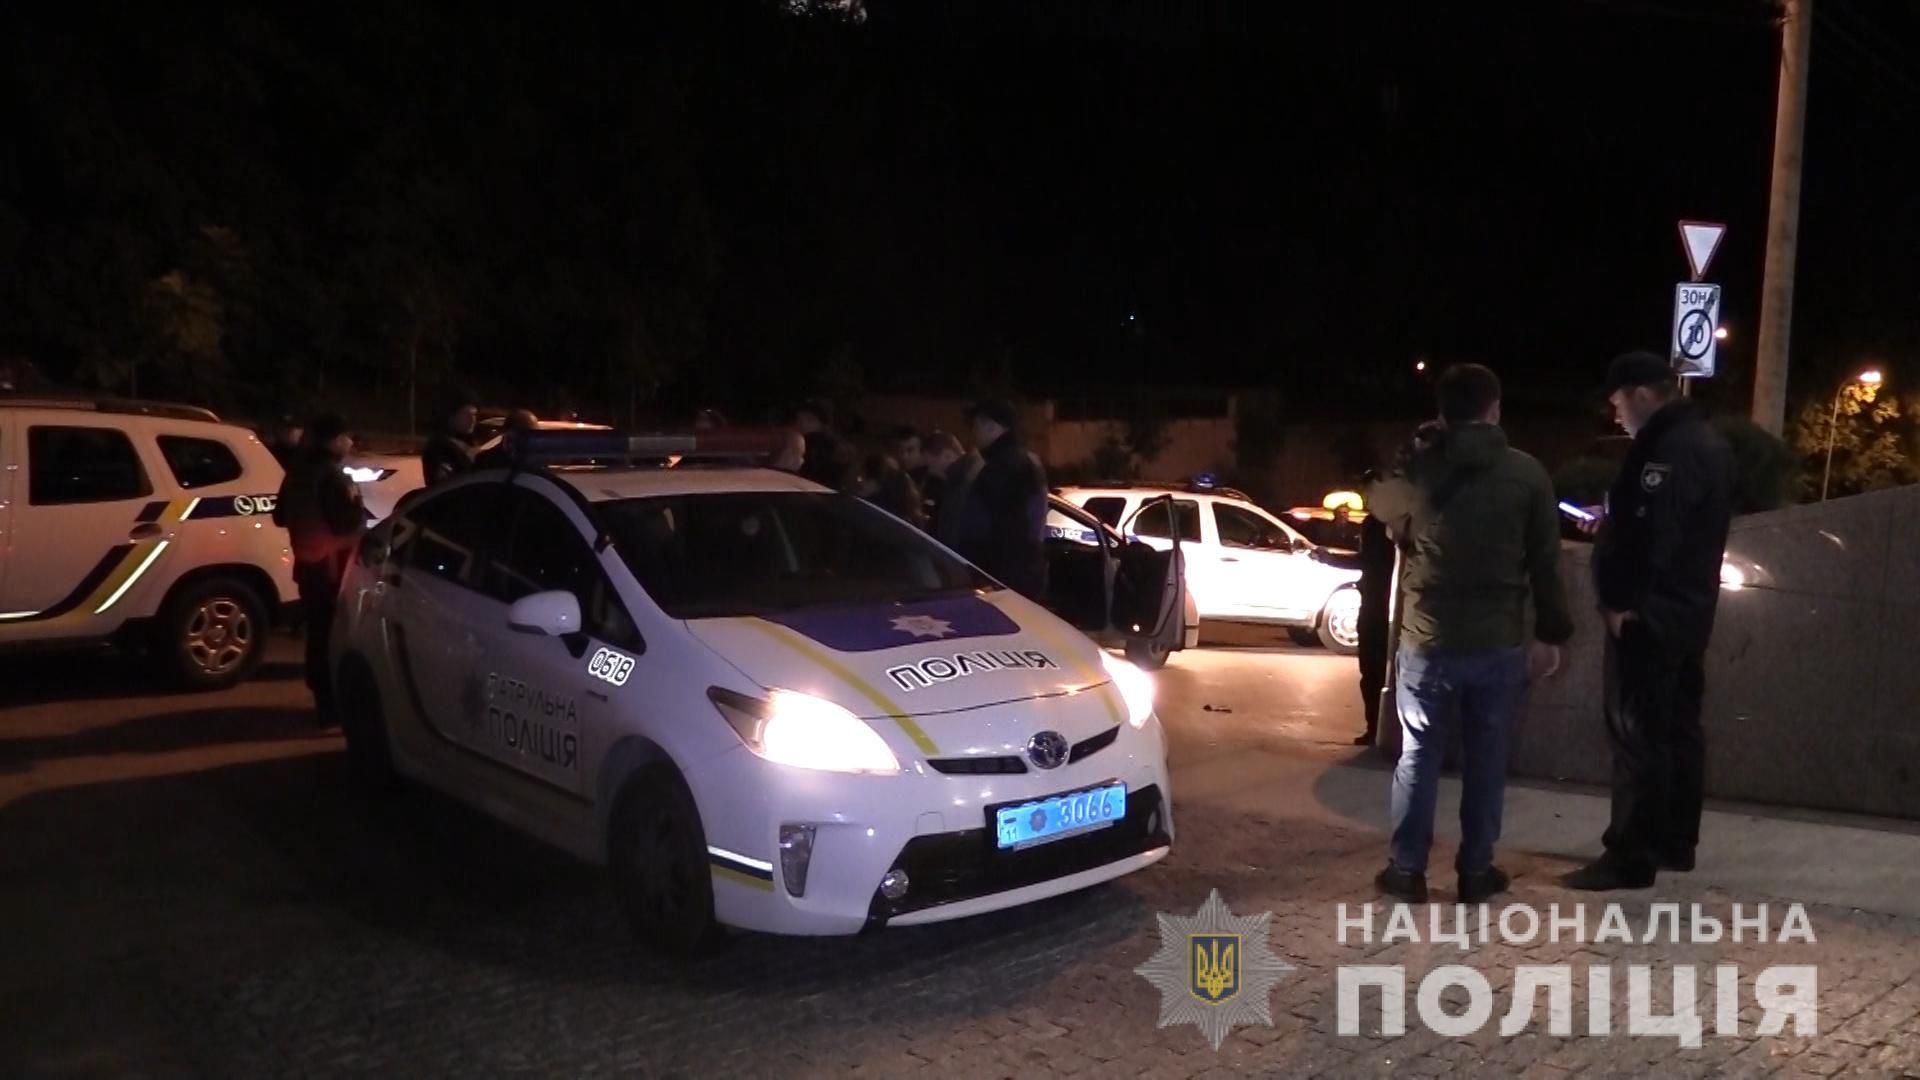 Ночная стрельба в Киеве: полиция просит опознать погибшего напавшего (фото 18+)